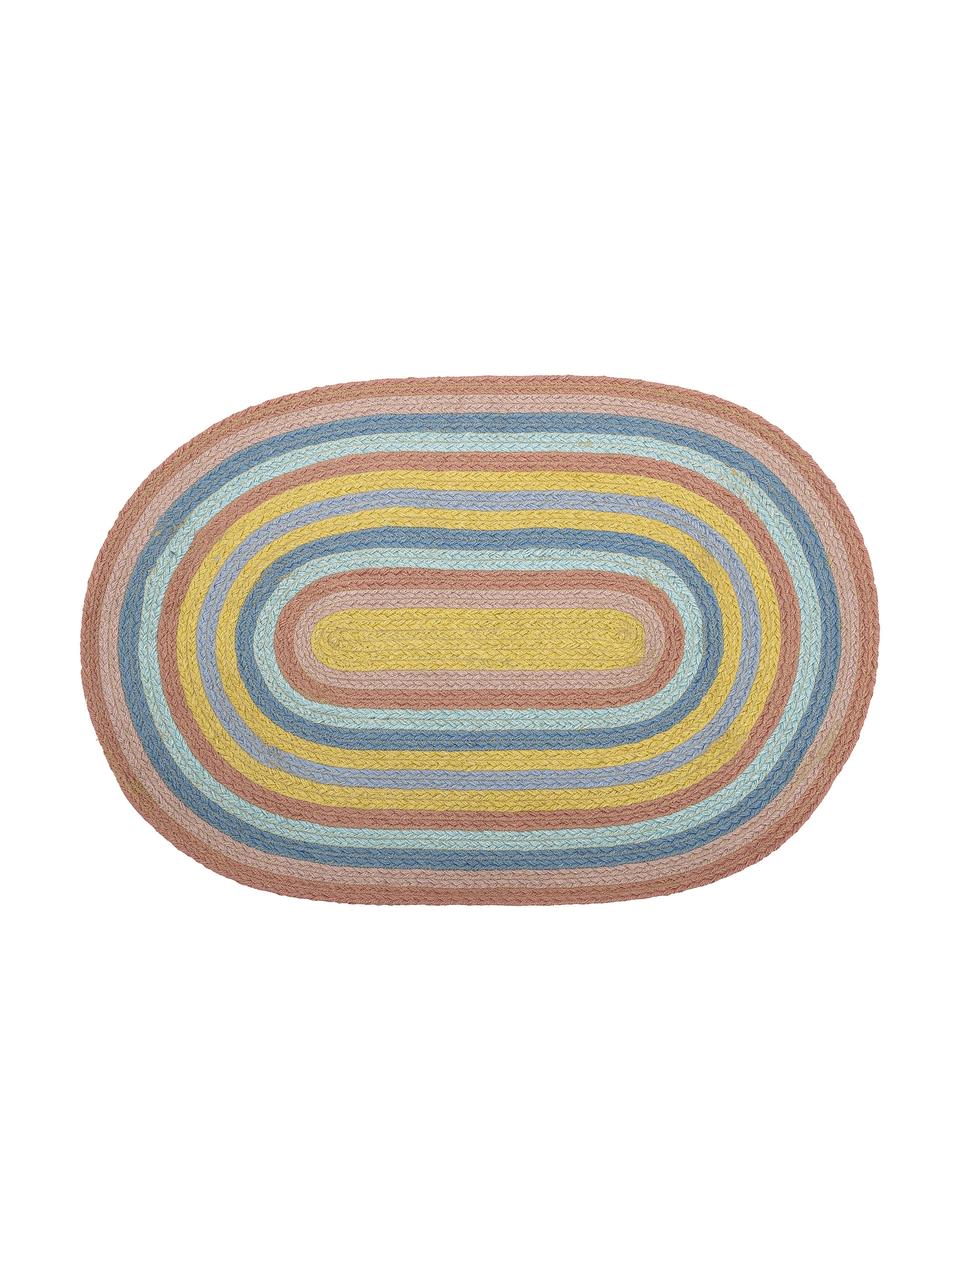 Owalny dywan z juty Ralia, 100% juta, Wielobarwny, S 75 x G 50 cm